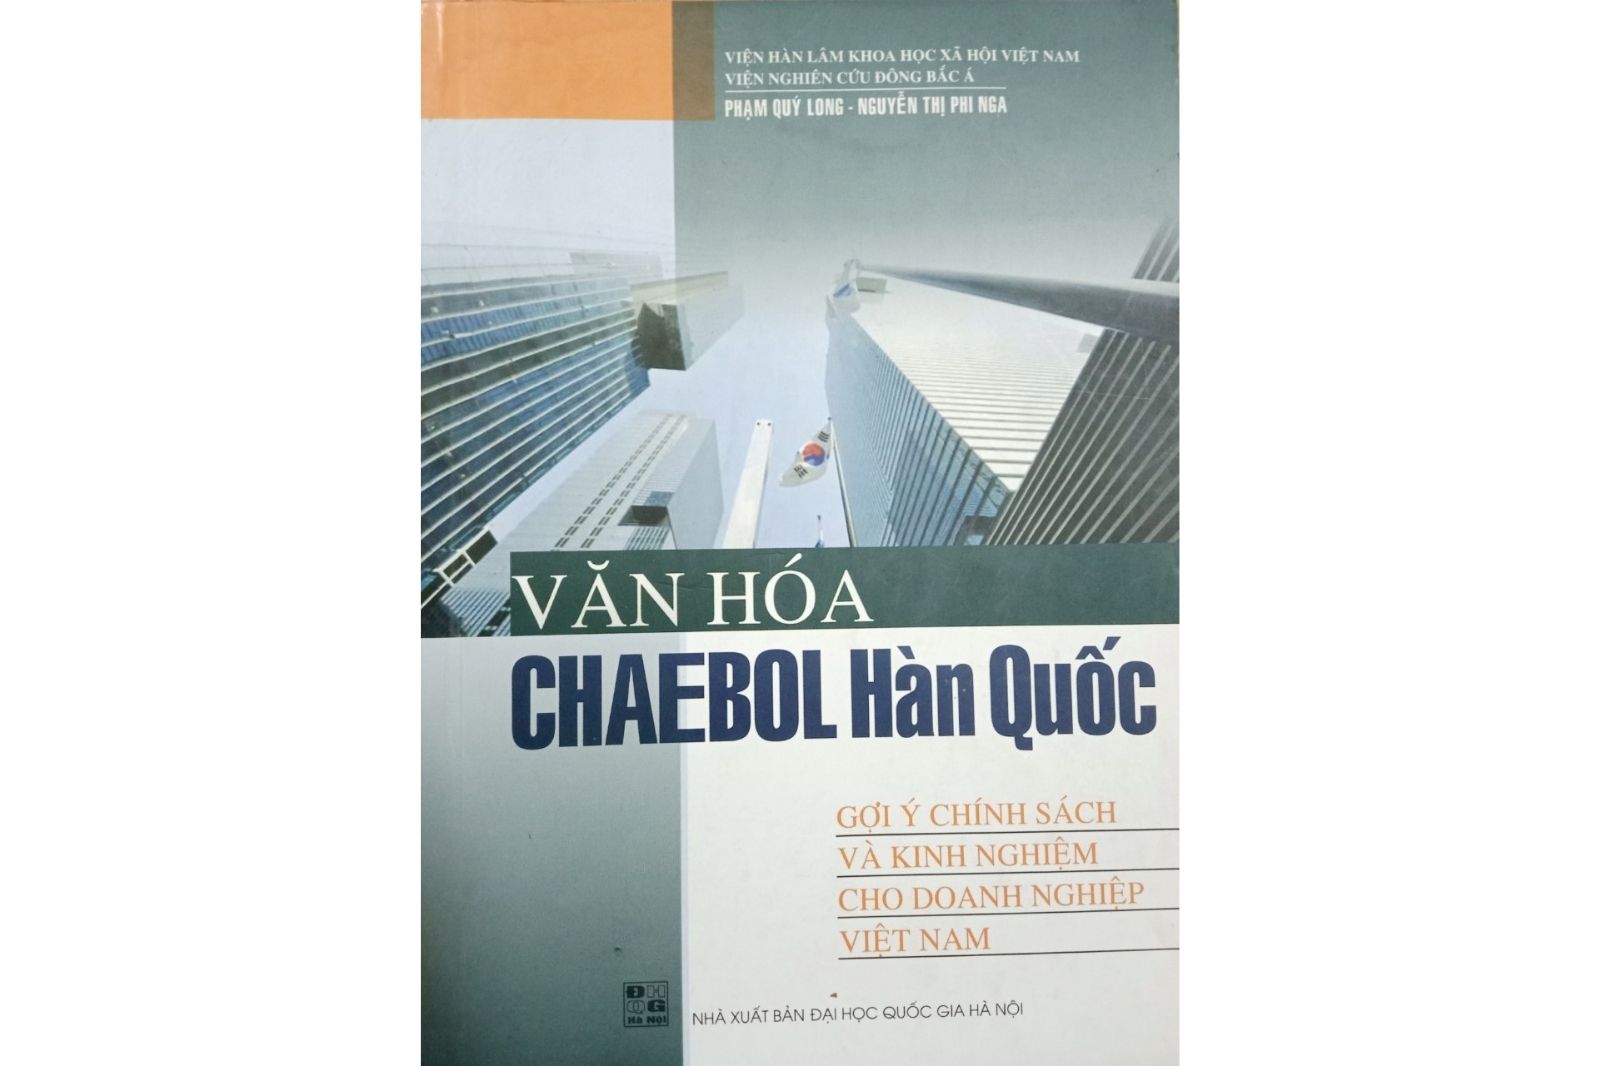 Văn hóa Chaebol Hàn Quốc, gợi ý chính sách và kinh nghiệm cho doanh nghiệp Việt Nam